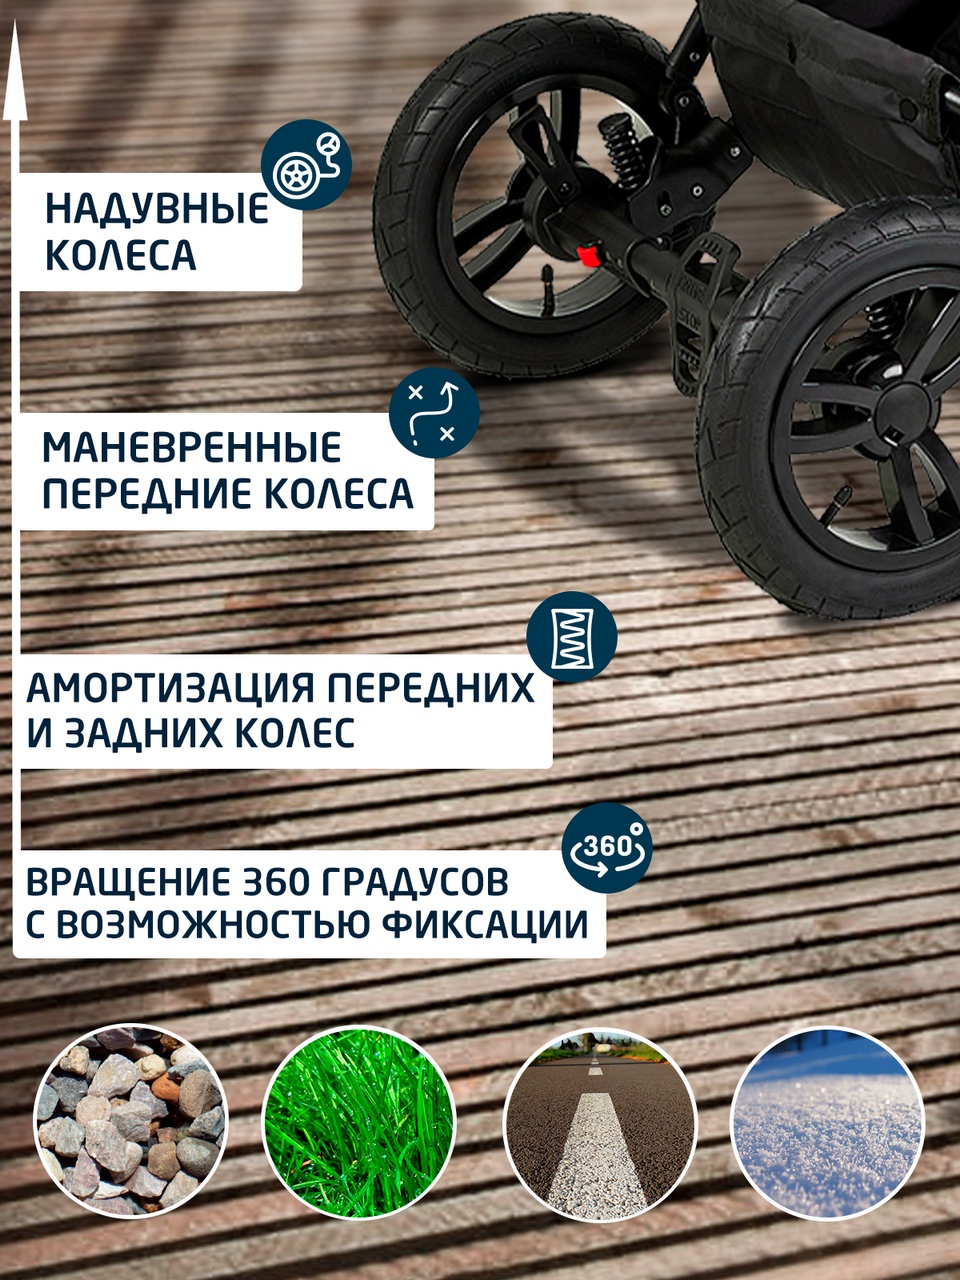 Особенности люльки коляски  2 в 1 Noordline Оlivia Sport 2023